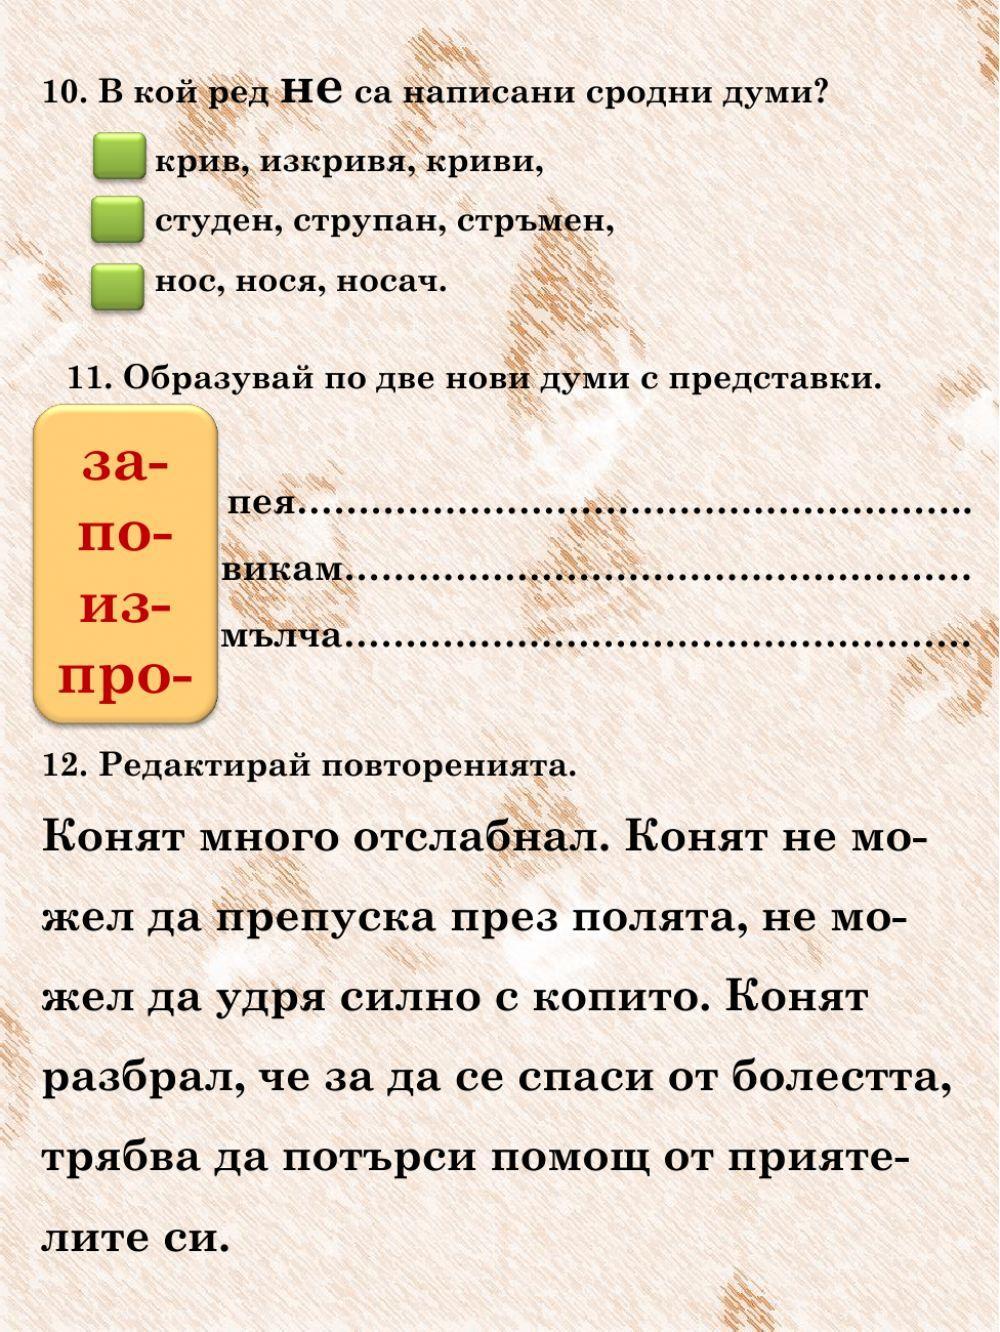 Изходно ниво по български език